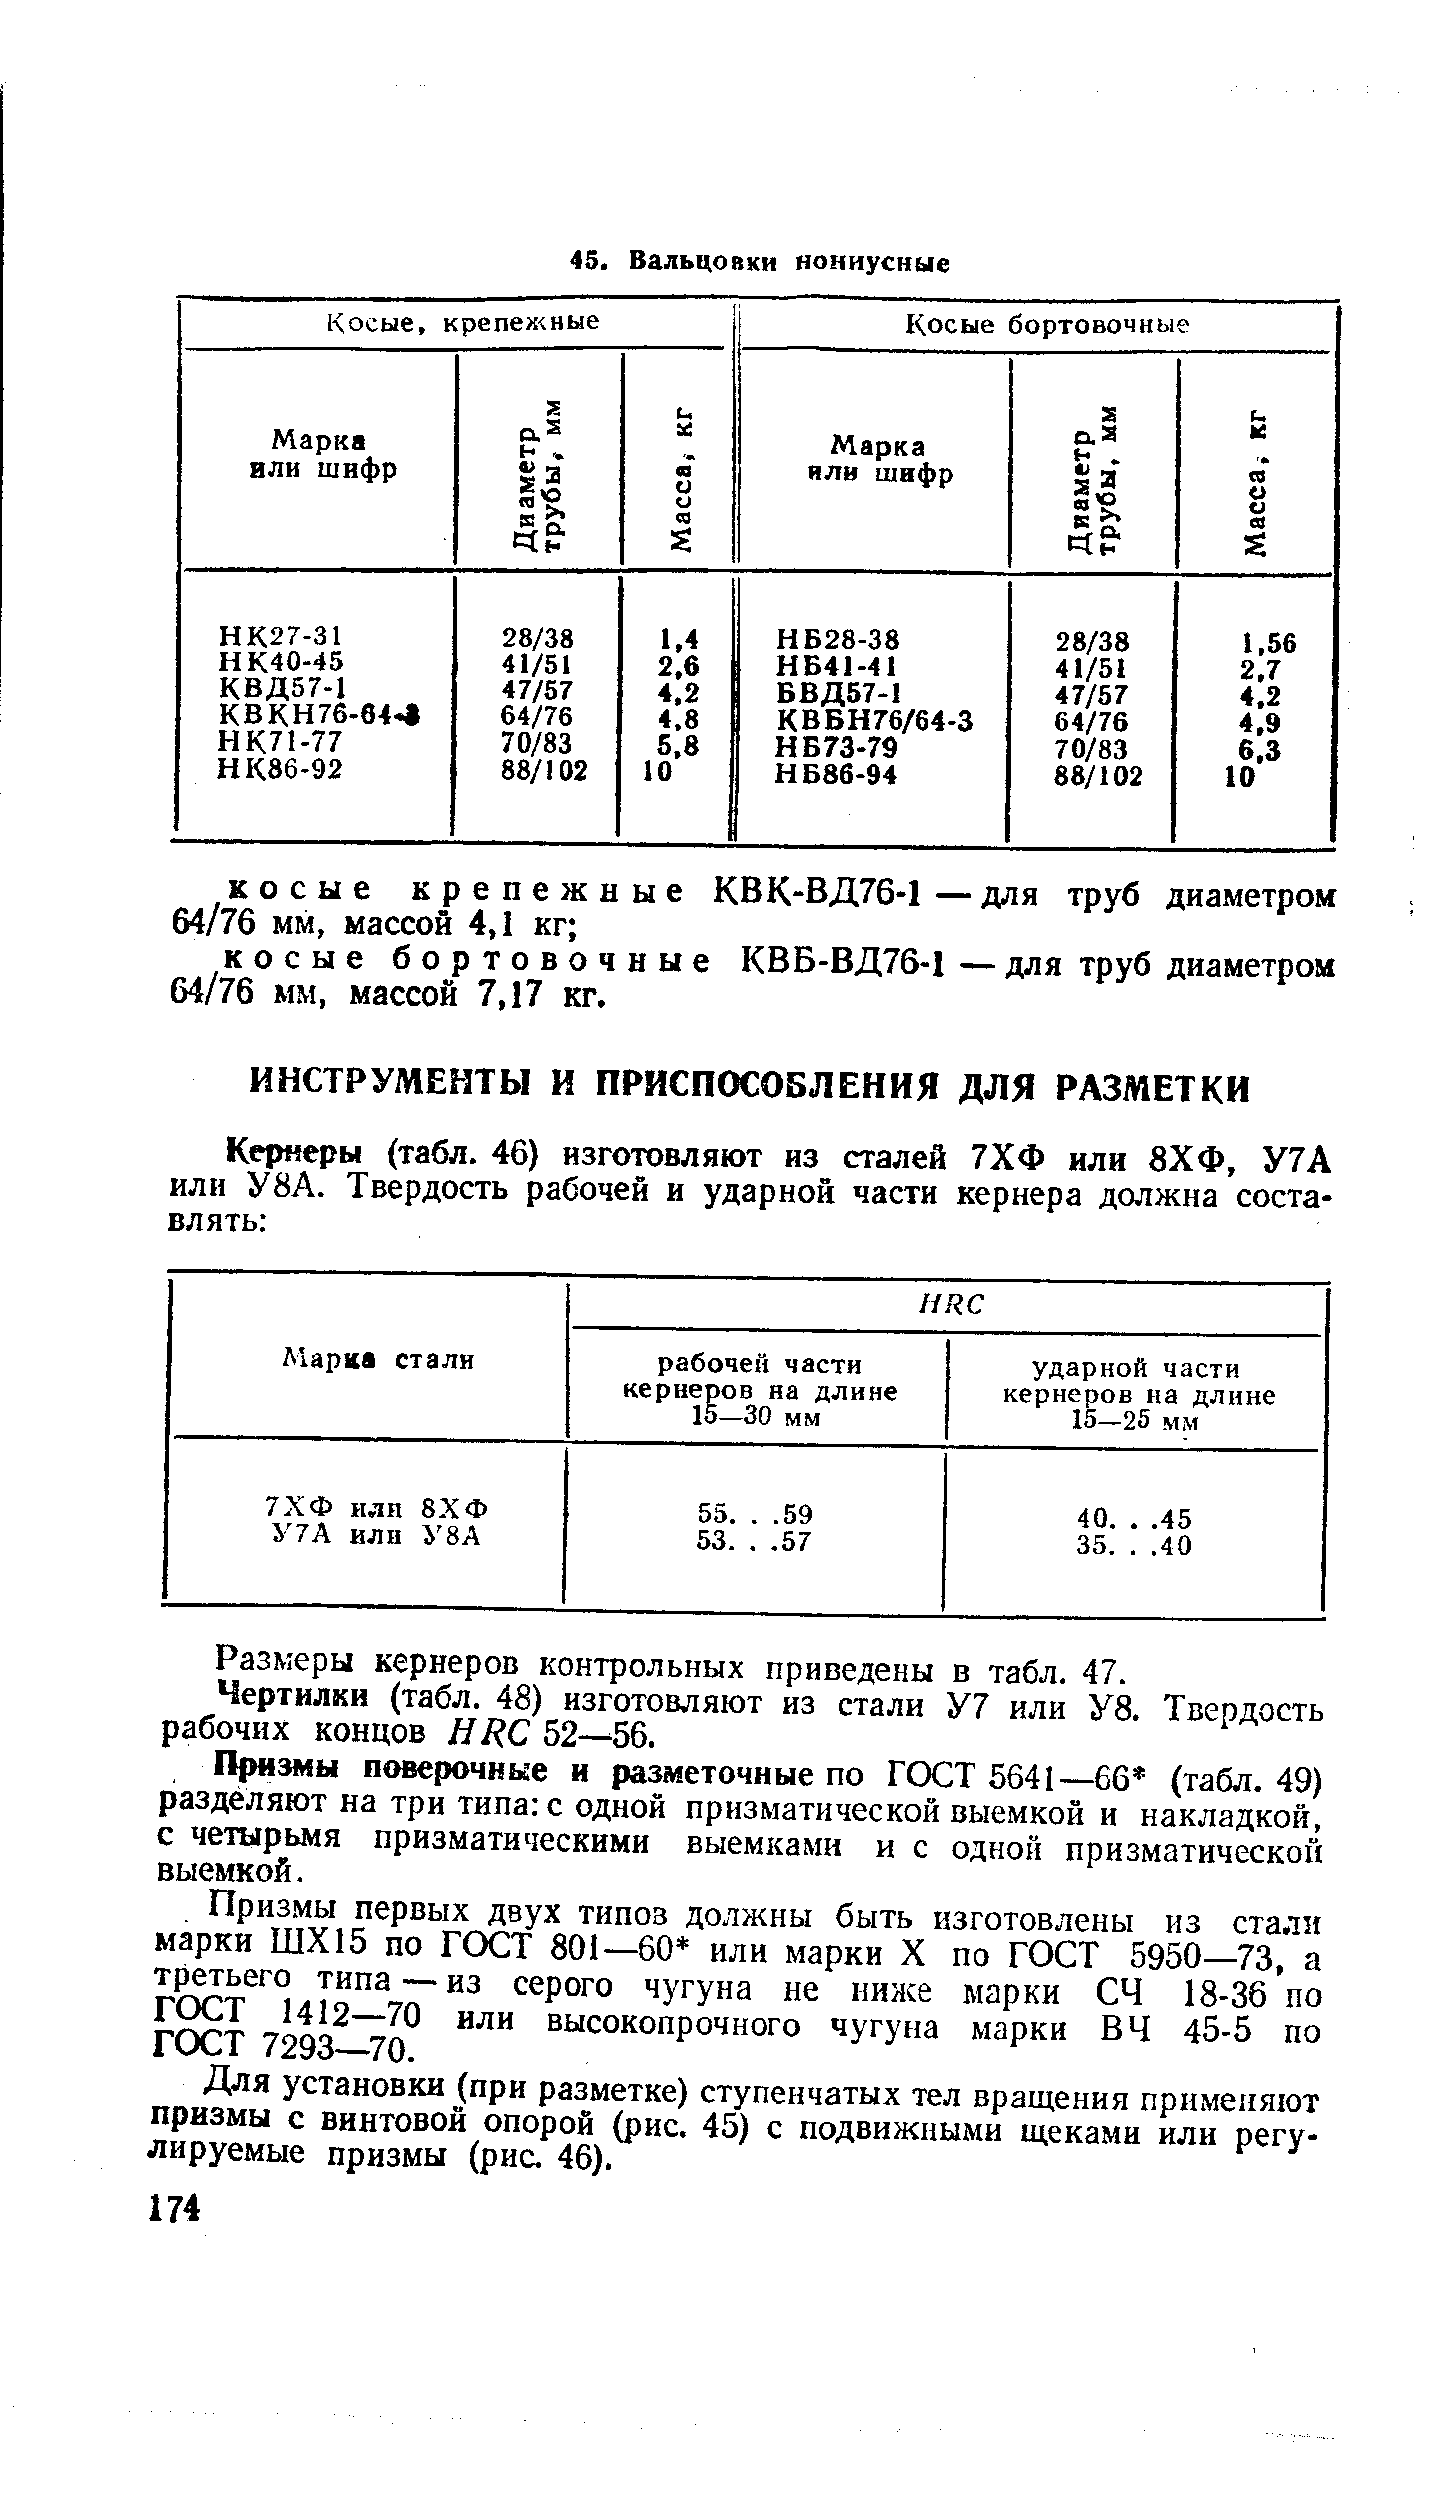 Размеры кернеров контрольных приведены в табл. 47.
